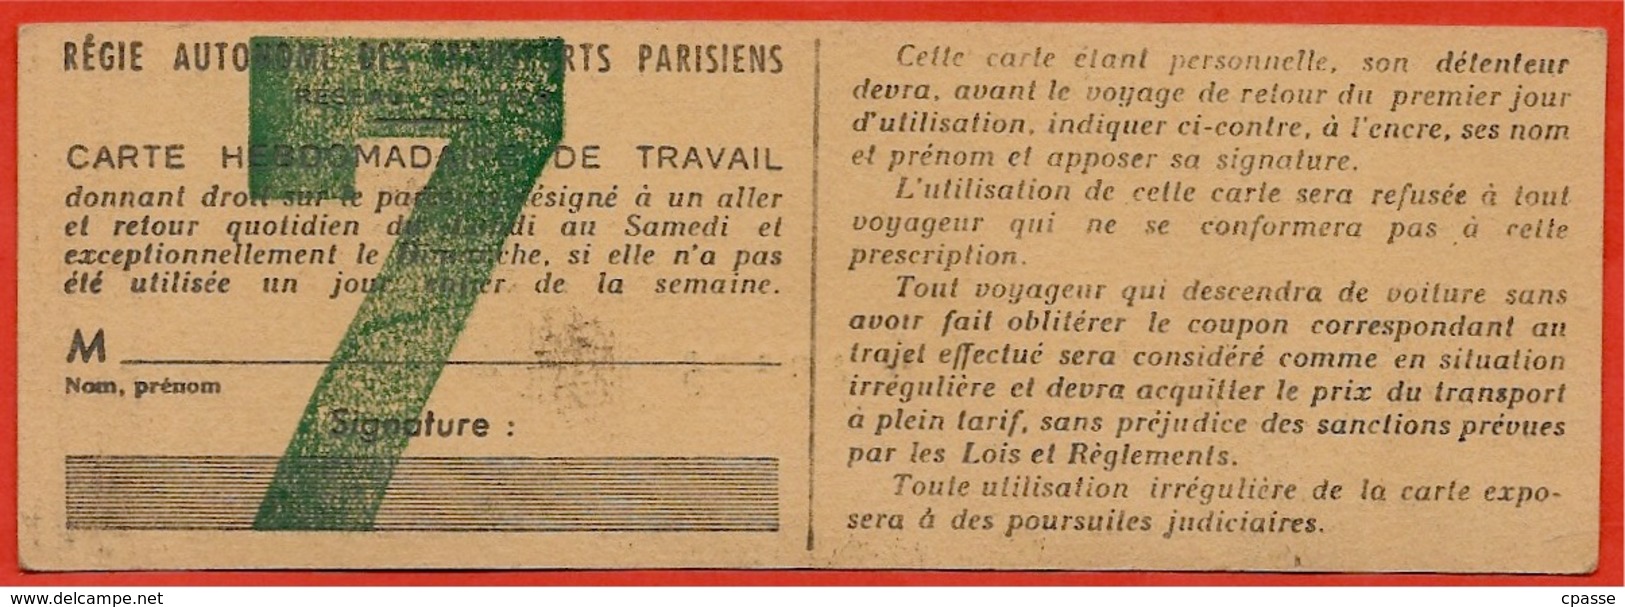 Rare Titre De Transport Avec Mention "SPECIMEN" CARTE HEBDOMADAIRE De TRAVAIL AUTOBUS RATP 75 PARIS - Europe